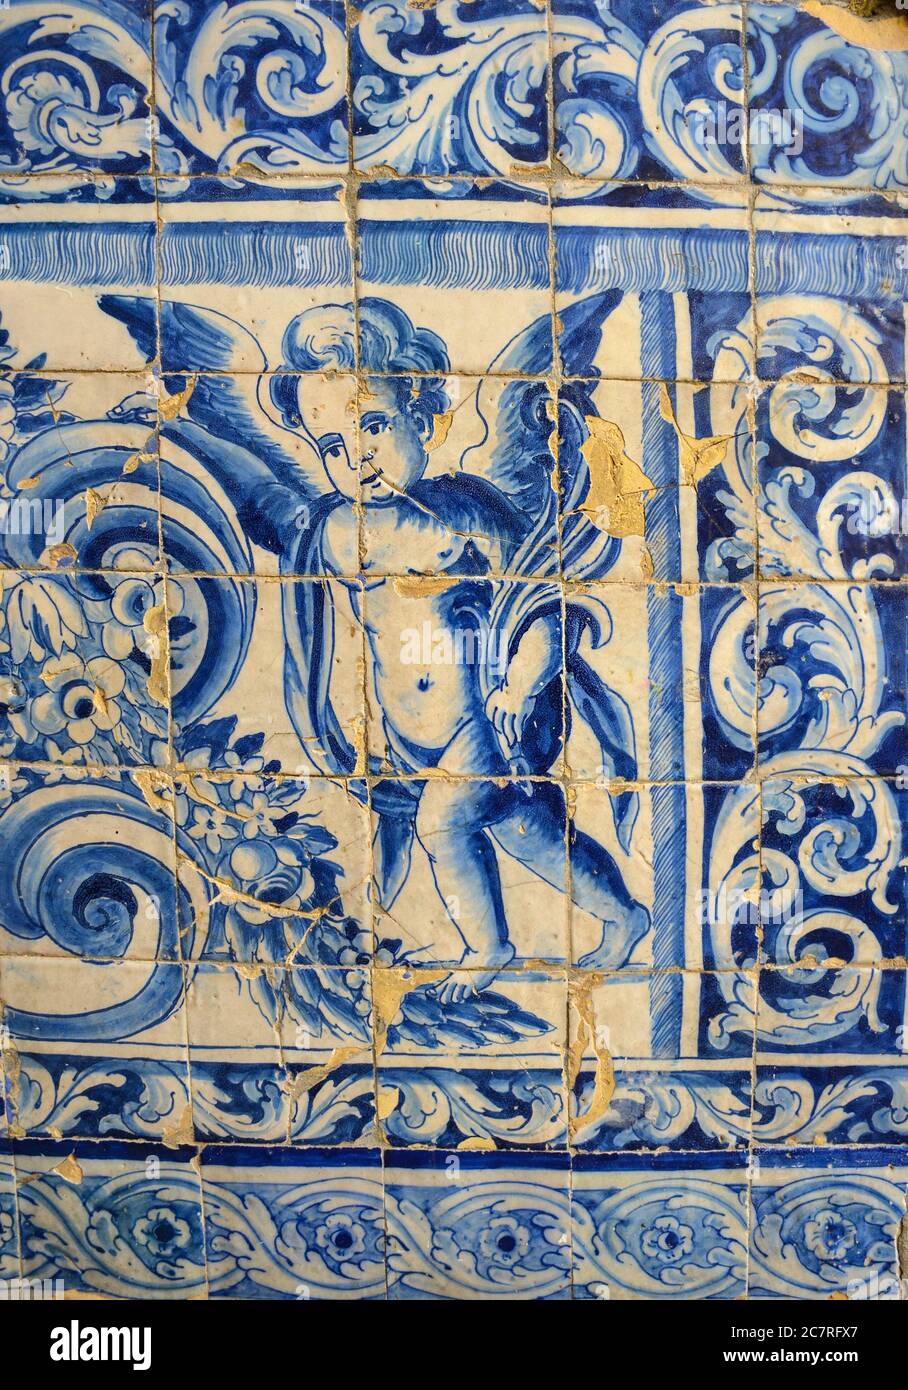 Dekorative alte typische Fliesen aus Portugal genannt 'Azulejos' mit farbigen Keramikfliesen, die die Häuser in Lissabon, Portugal schmückt Stockfoto